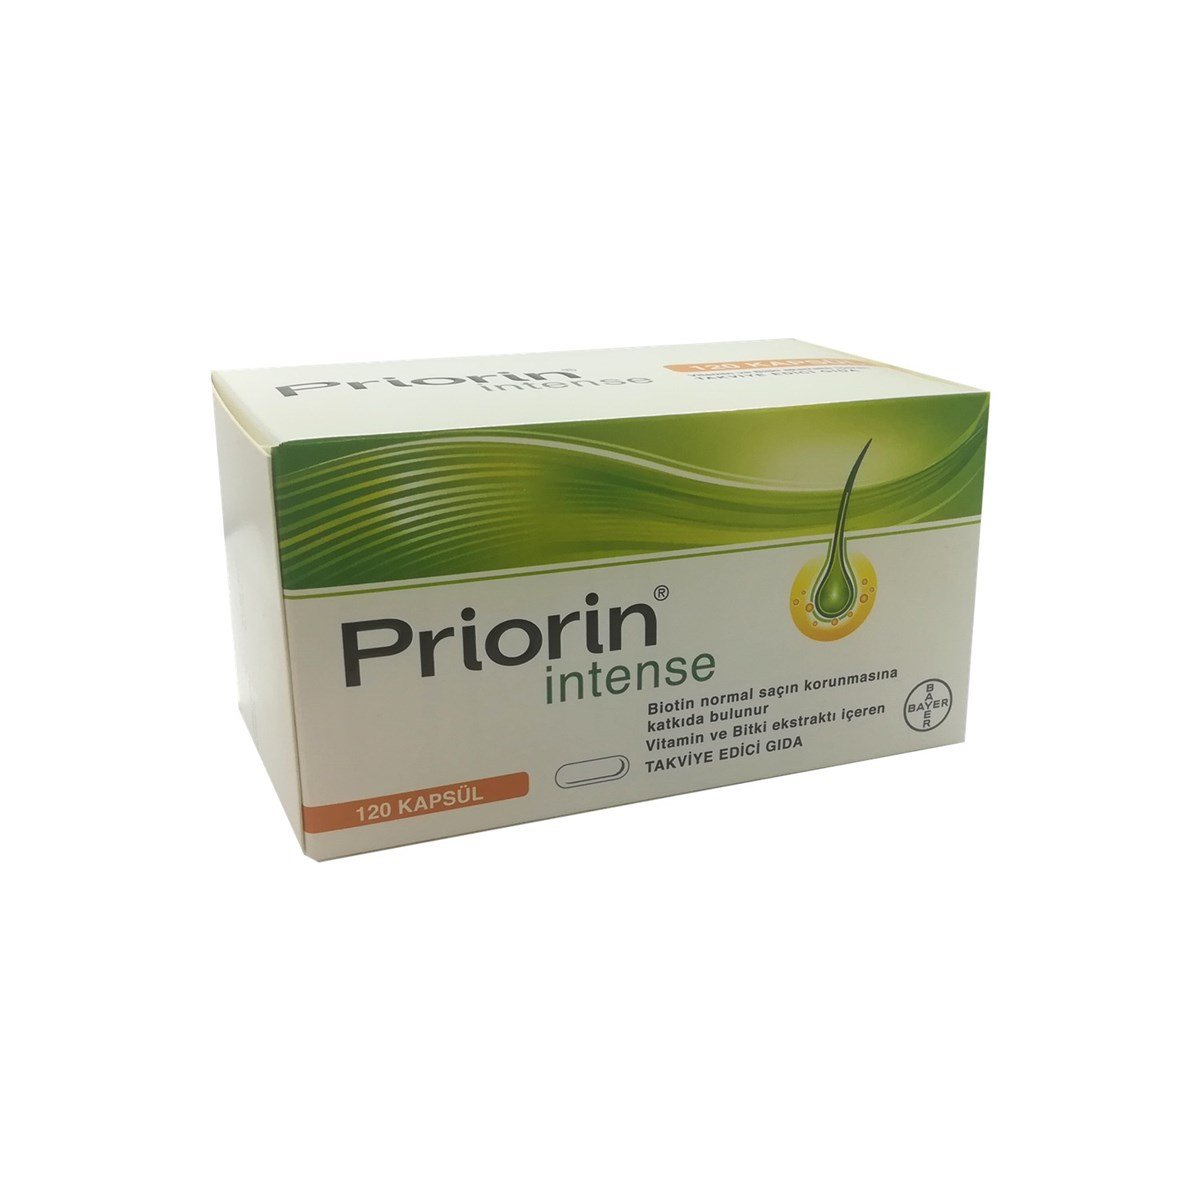 Priorin Intense 120 Kapsül DepoEczanem.com | Dermokozmetik Cilt & Vücut  Bakımı, Vitamin & Mineral – Takviye Edici Gıda ve Reçetesiz Sağlık Ürünleri